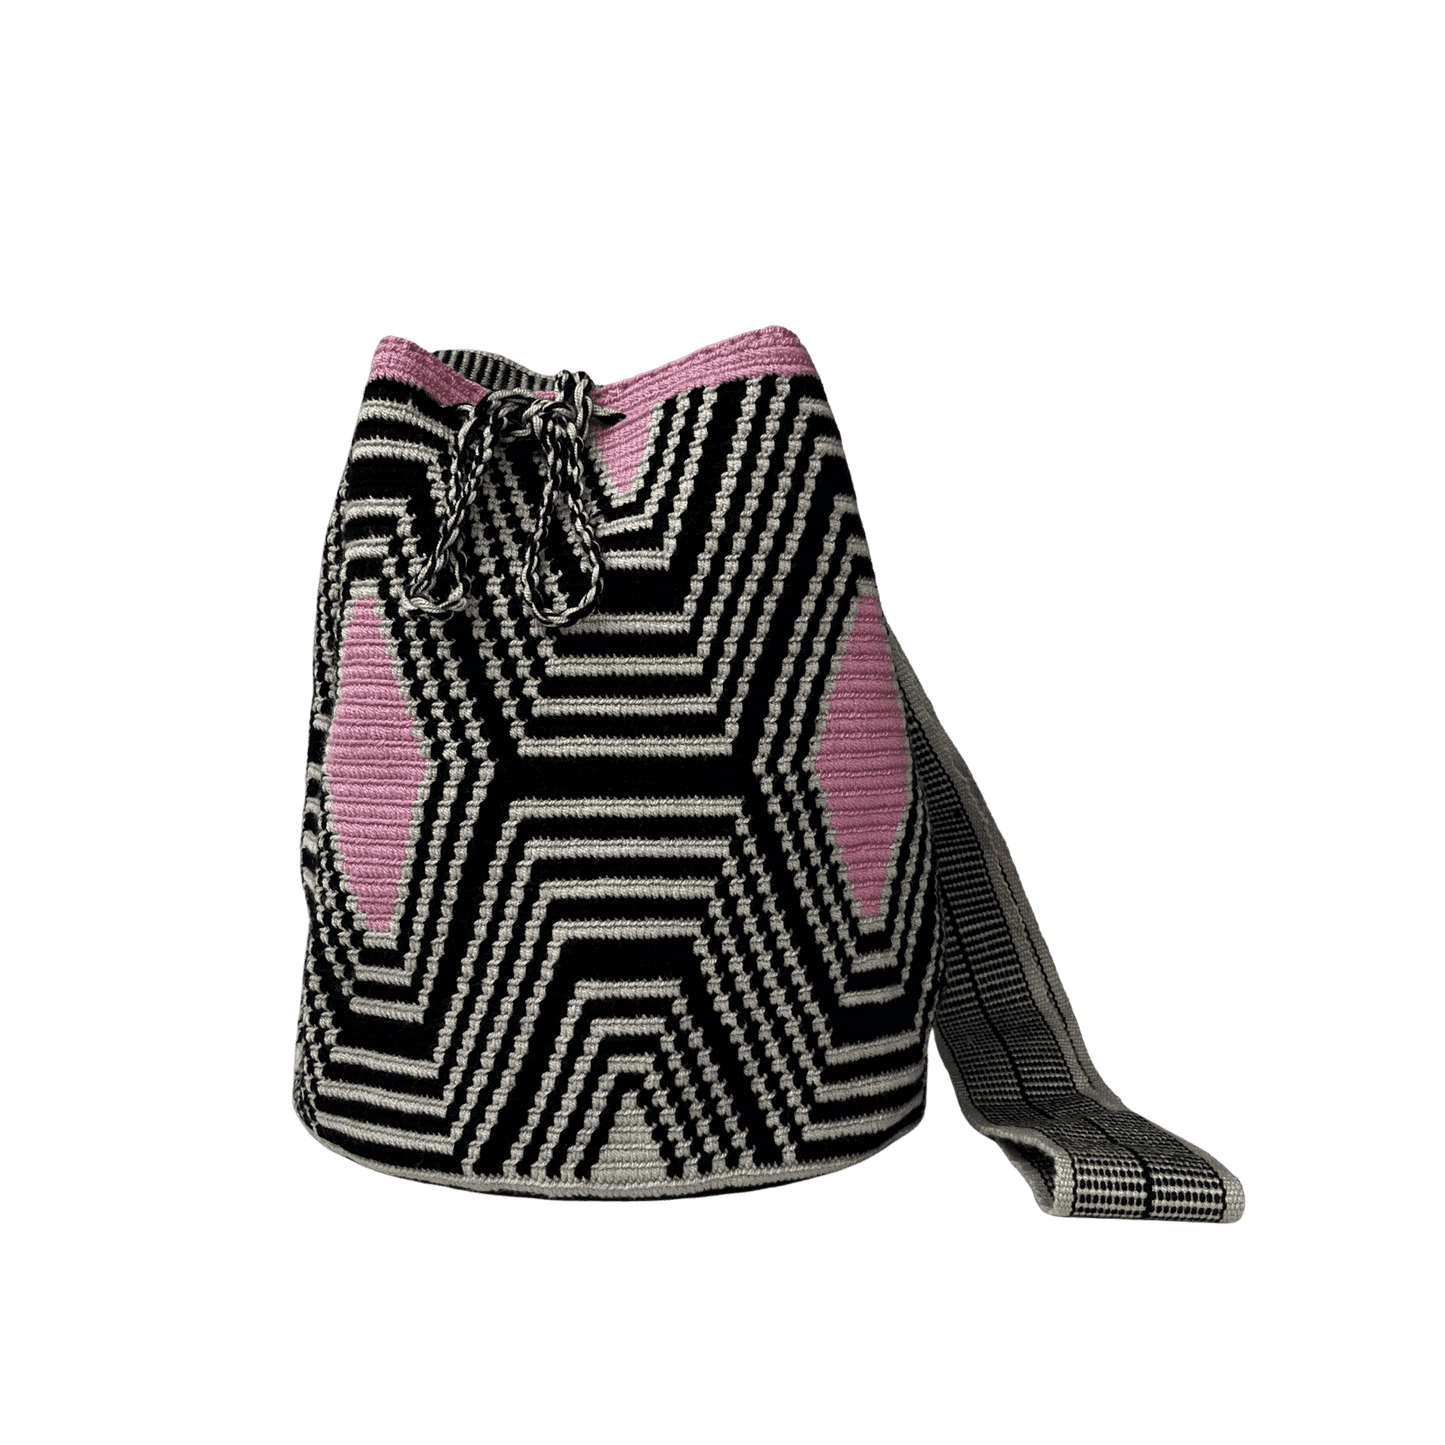 Mochila wayuu original tejida a una hebra en colores negro, beige y rosado